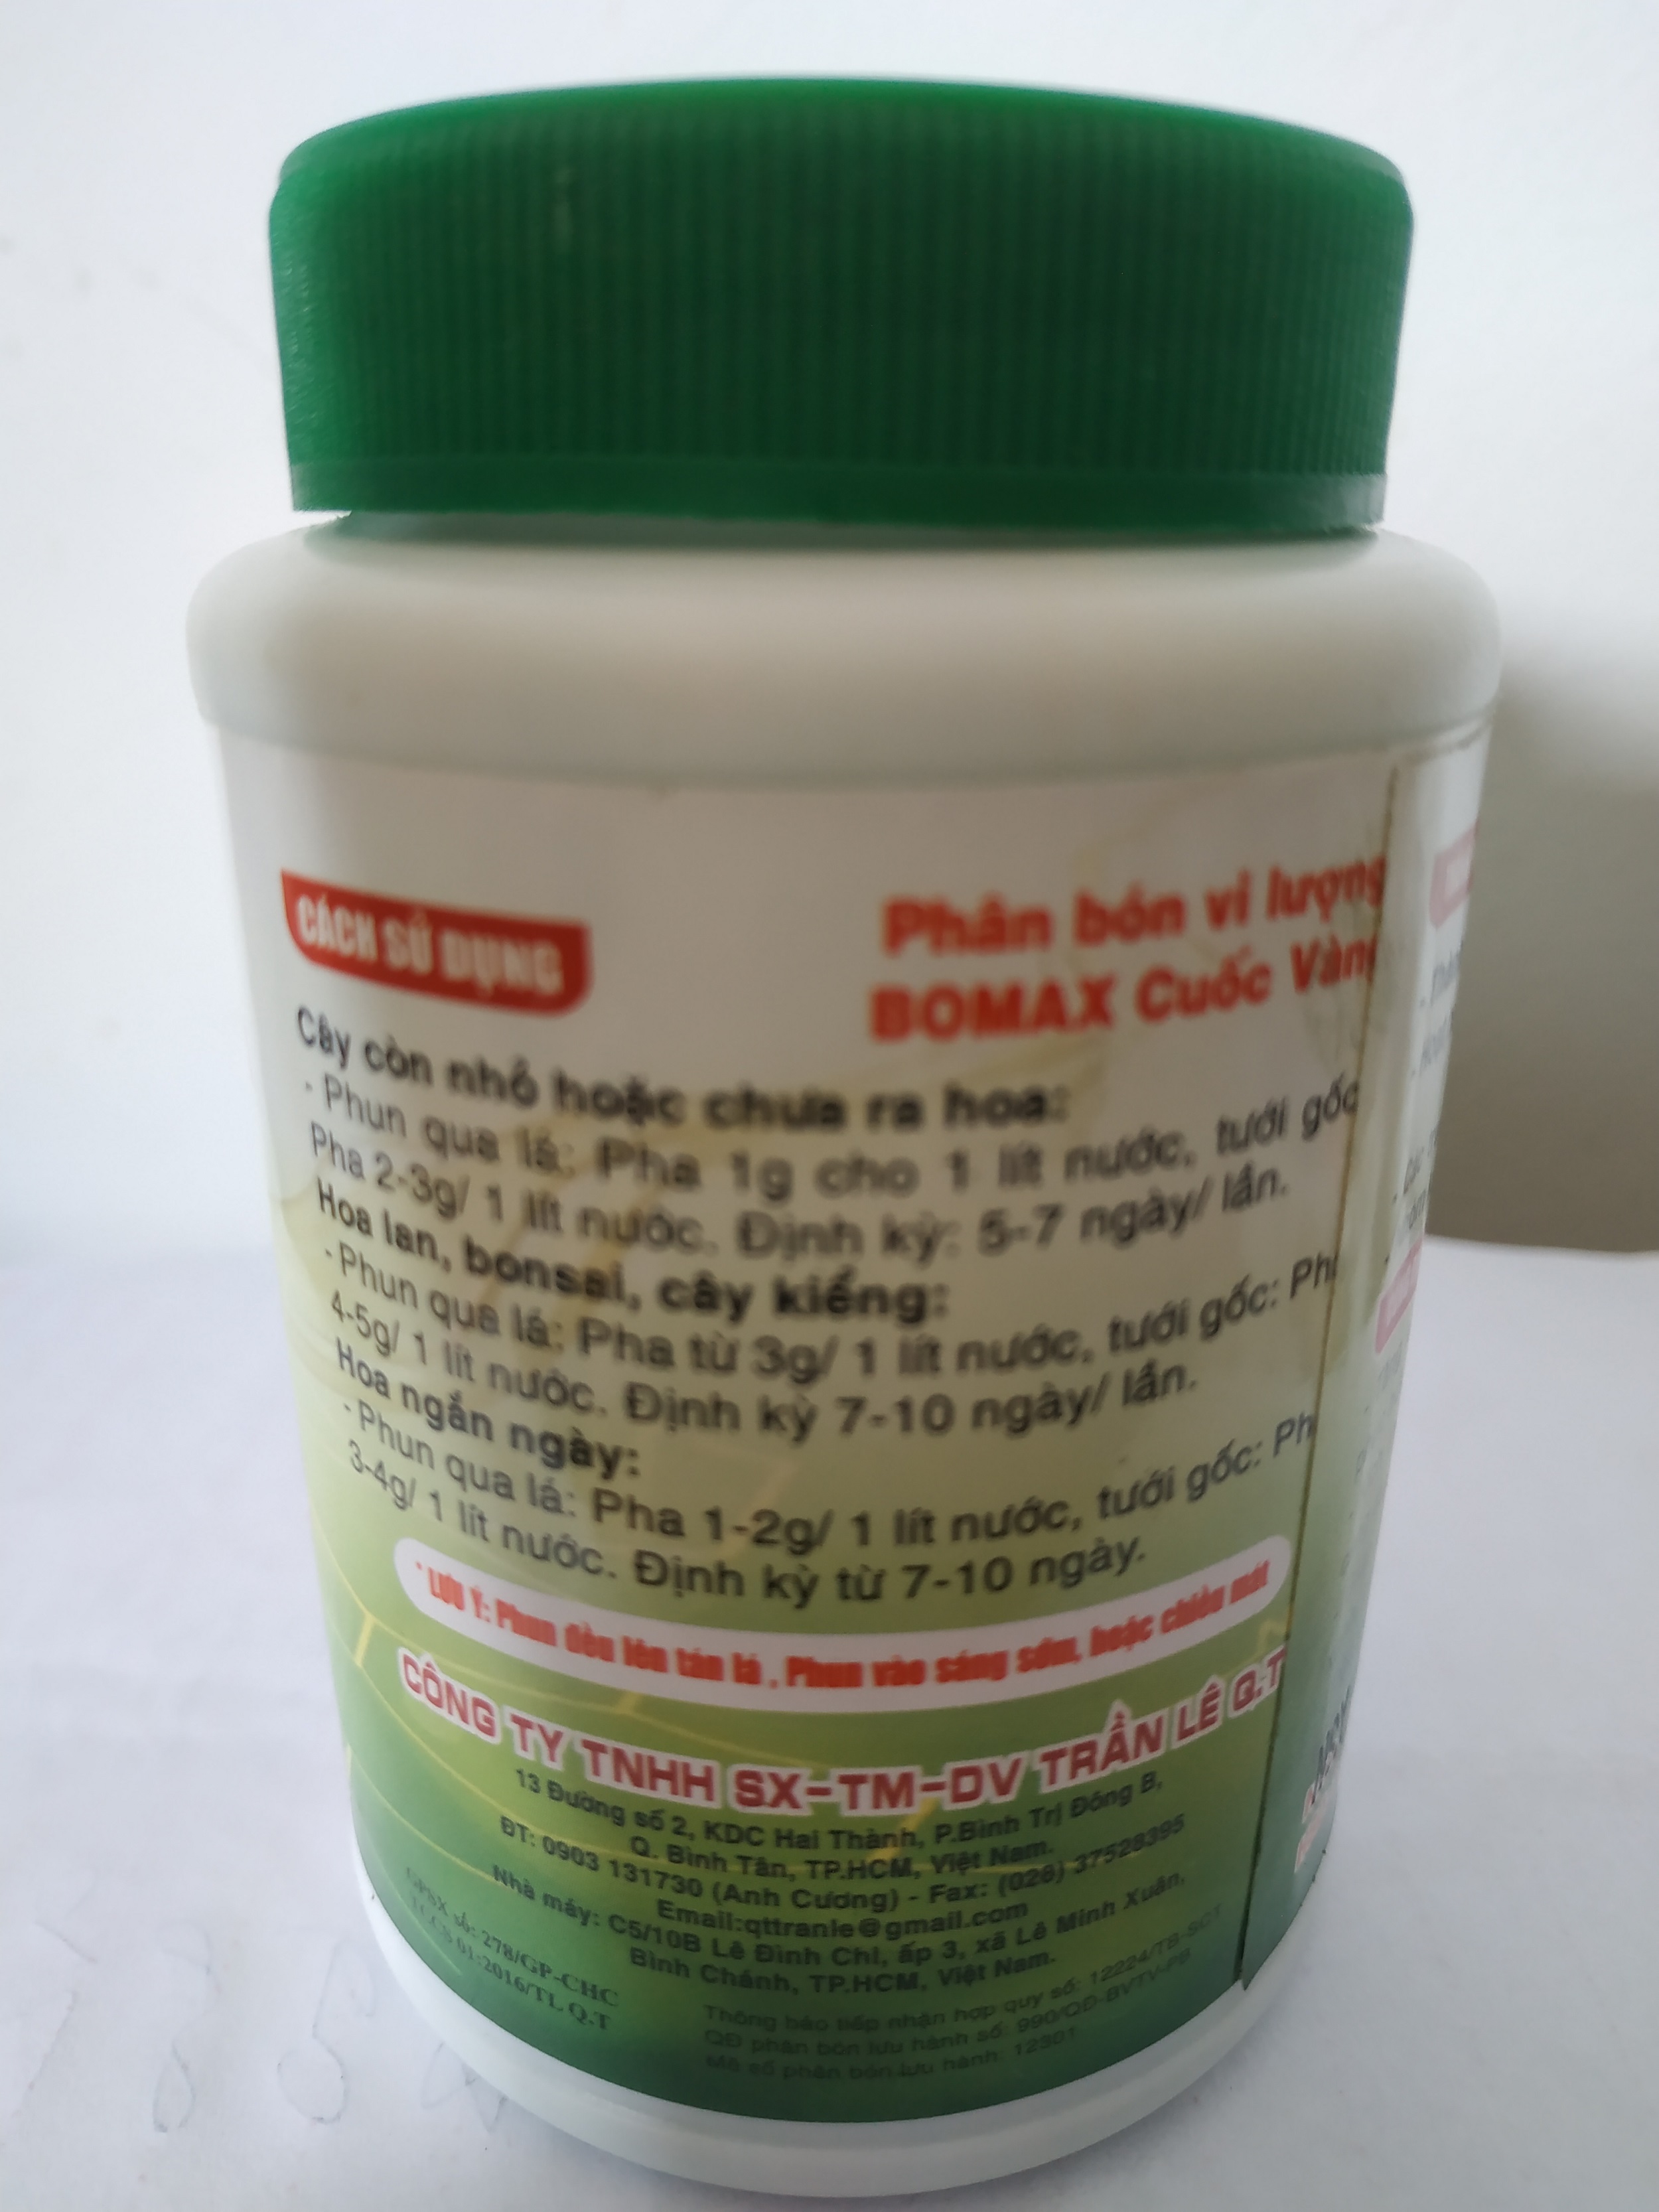 Phân bón vi lượng NPK 30-10-10+TE dưỡng cây-nảy chồi- xanh lá - chai 500 gram bomax